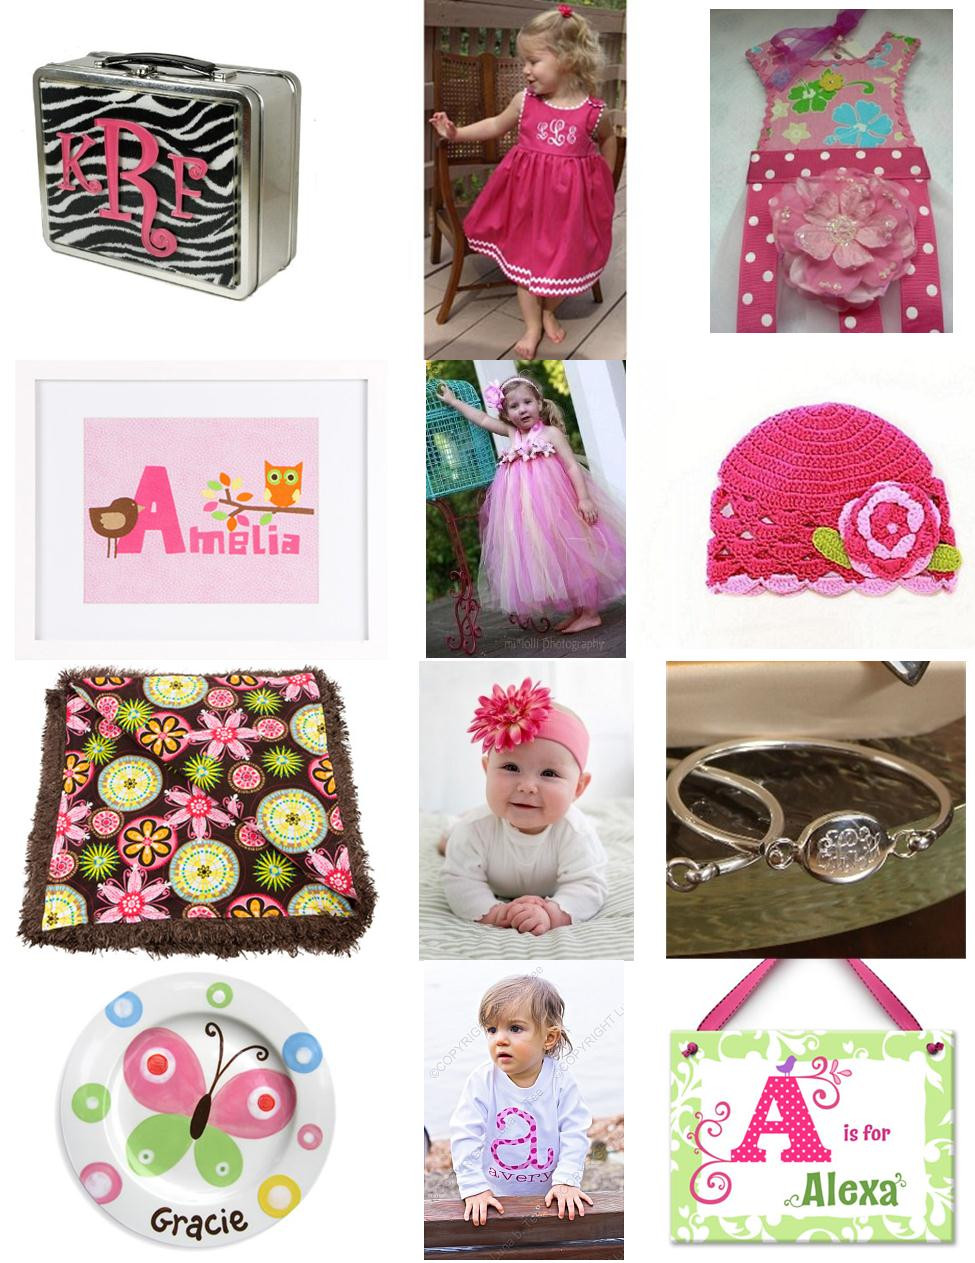 Christmas Gift Ideas For Little Girls
 Sophisticated Stationery Christmas Gift Ideas for Little